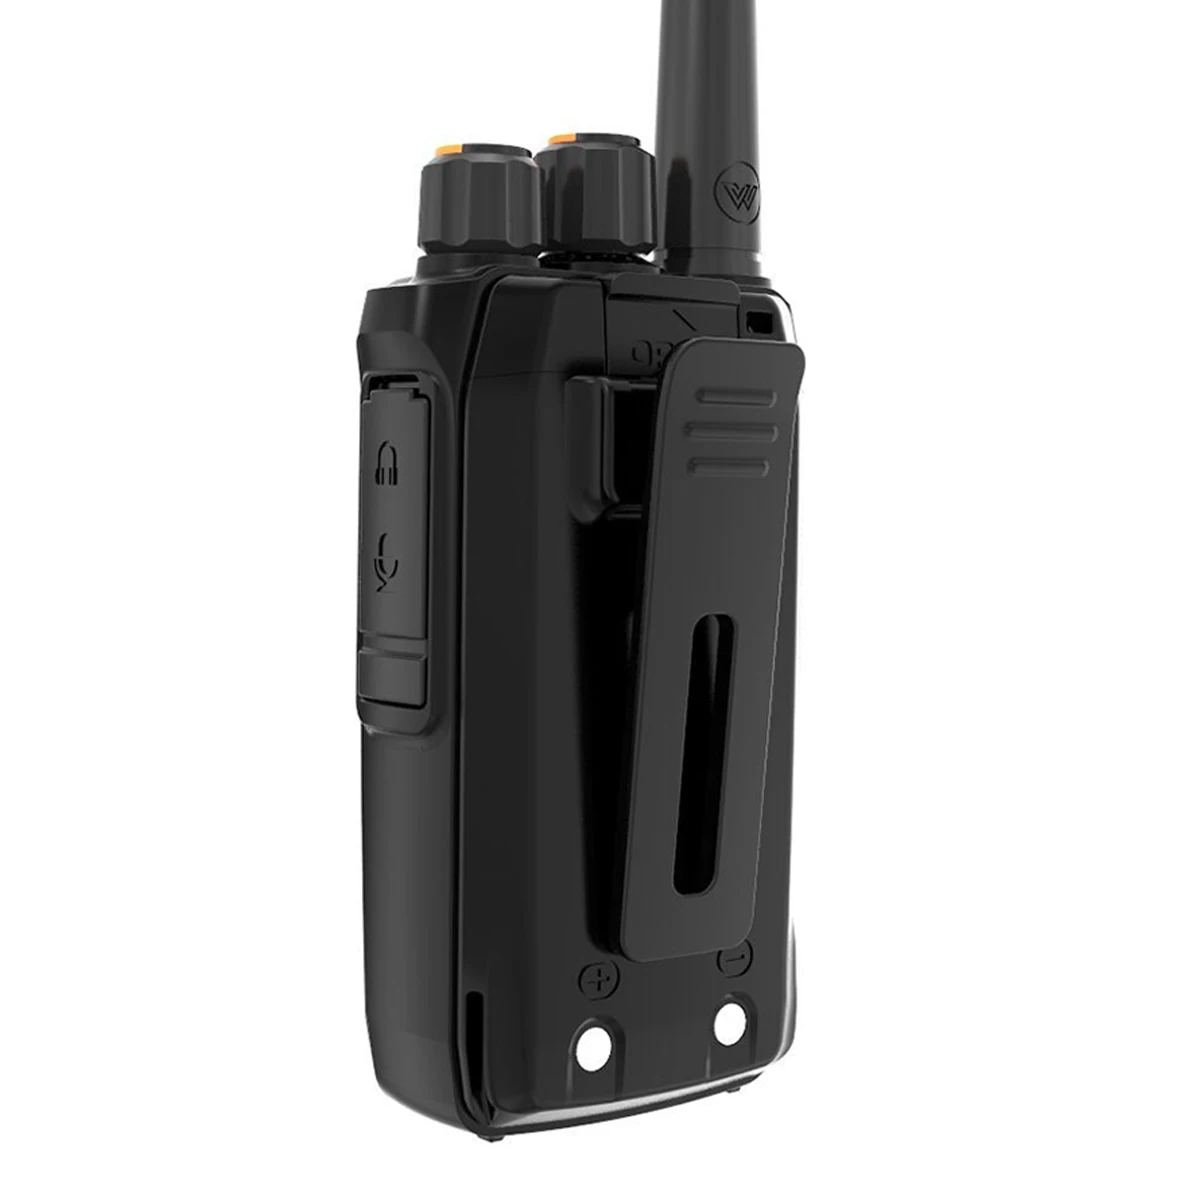 2pcs abbree ar-f1 walkie talkie 10km long range 5w uhf 400-470mhz vox ham cb portable woki toki bf-888s bf888s two way radio